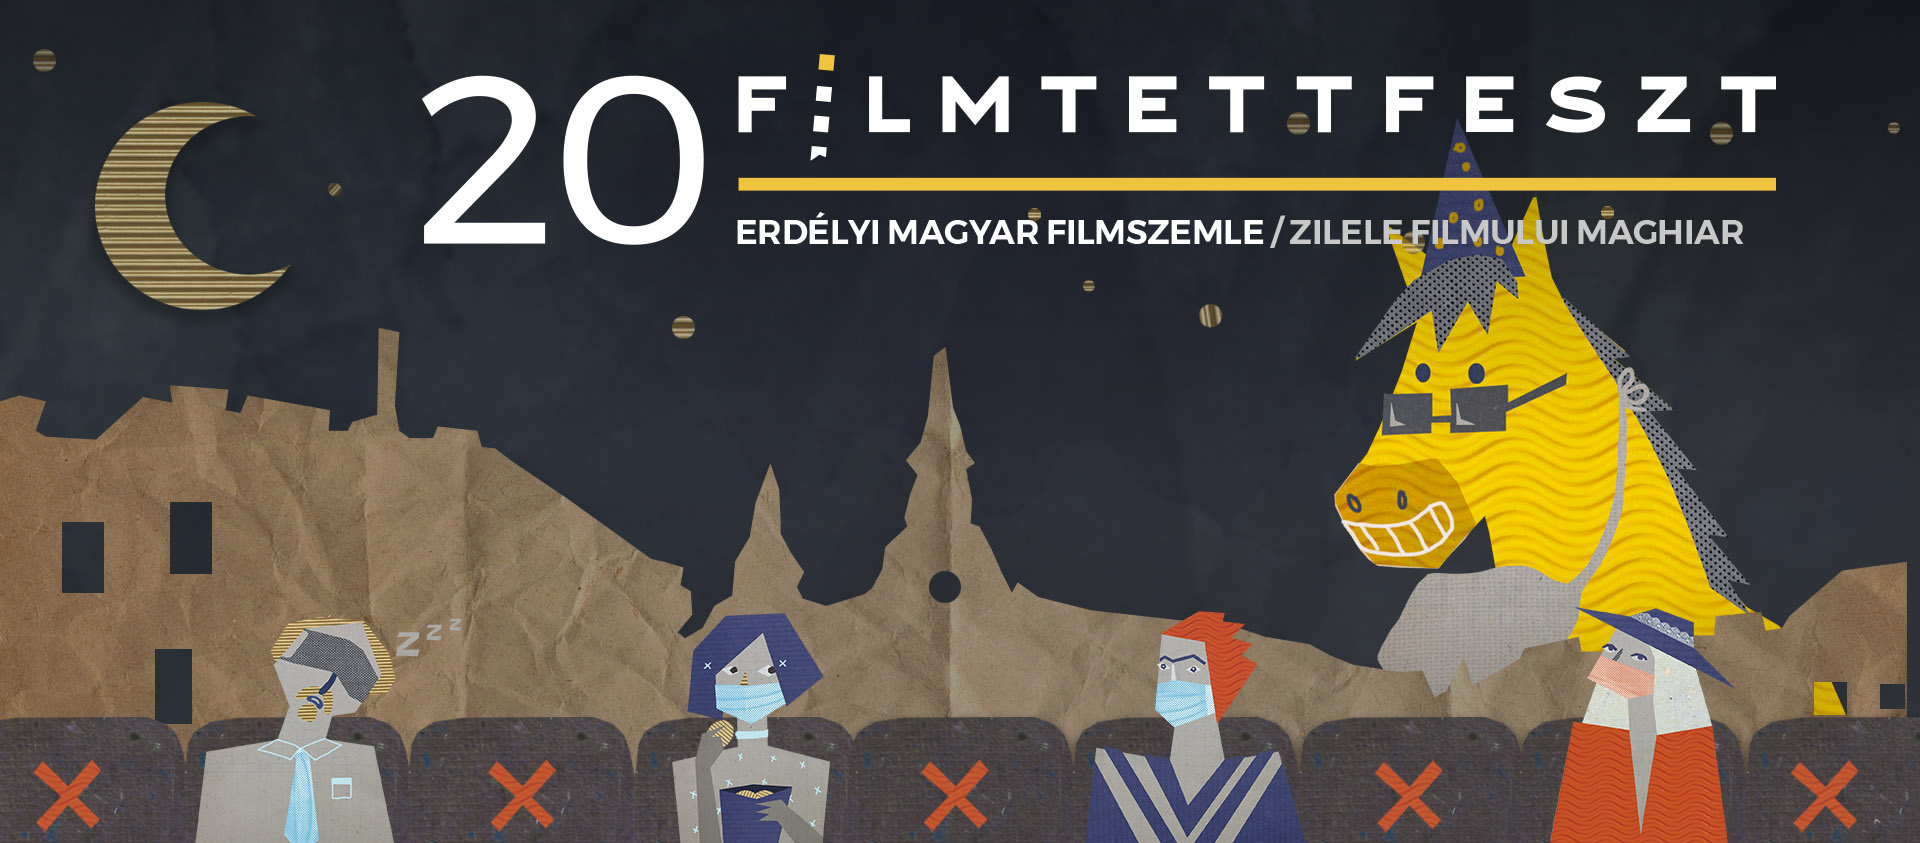 Filme în curtea Muzeului de Artă, la cinema Victoria și online anul acesta  la Filmtettfeszt – Zilele Filmului Maghiar